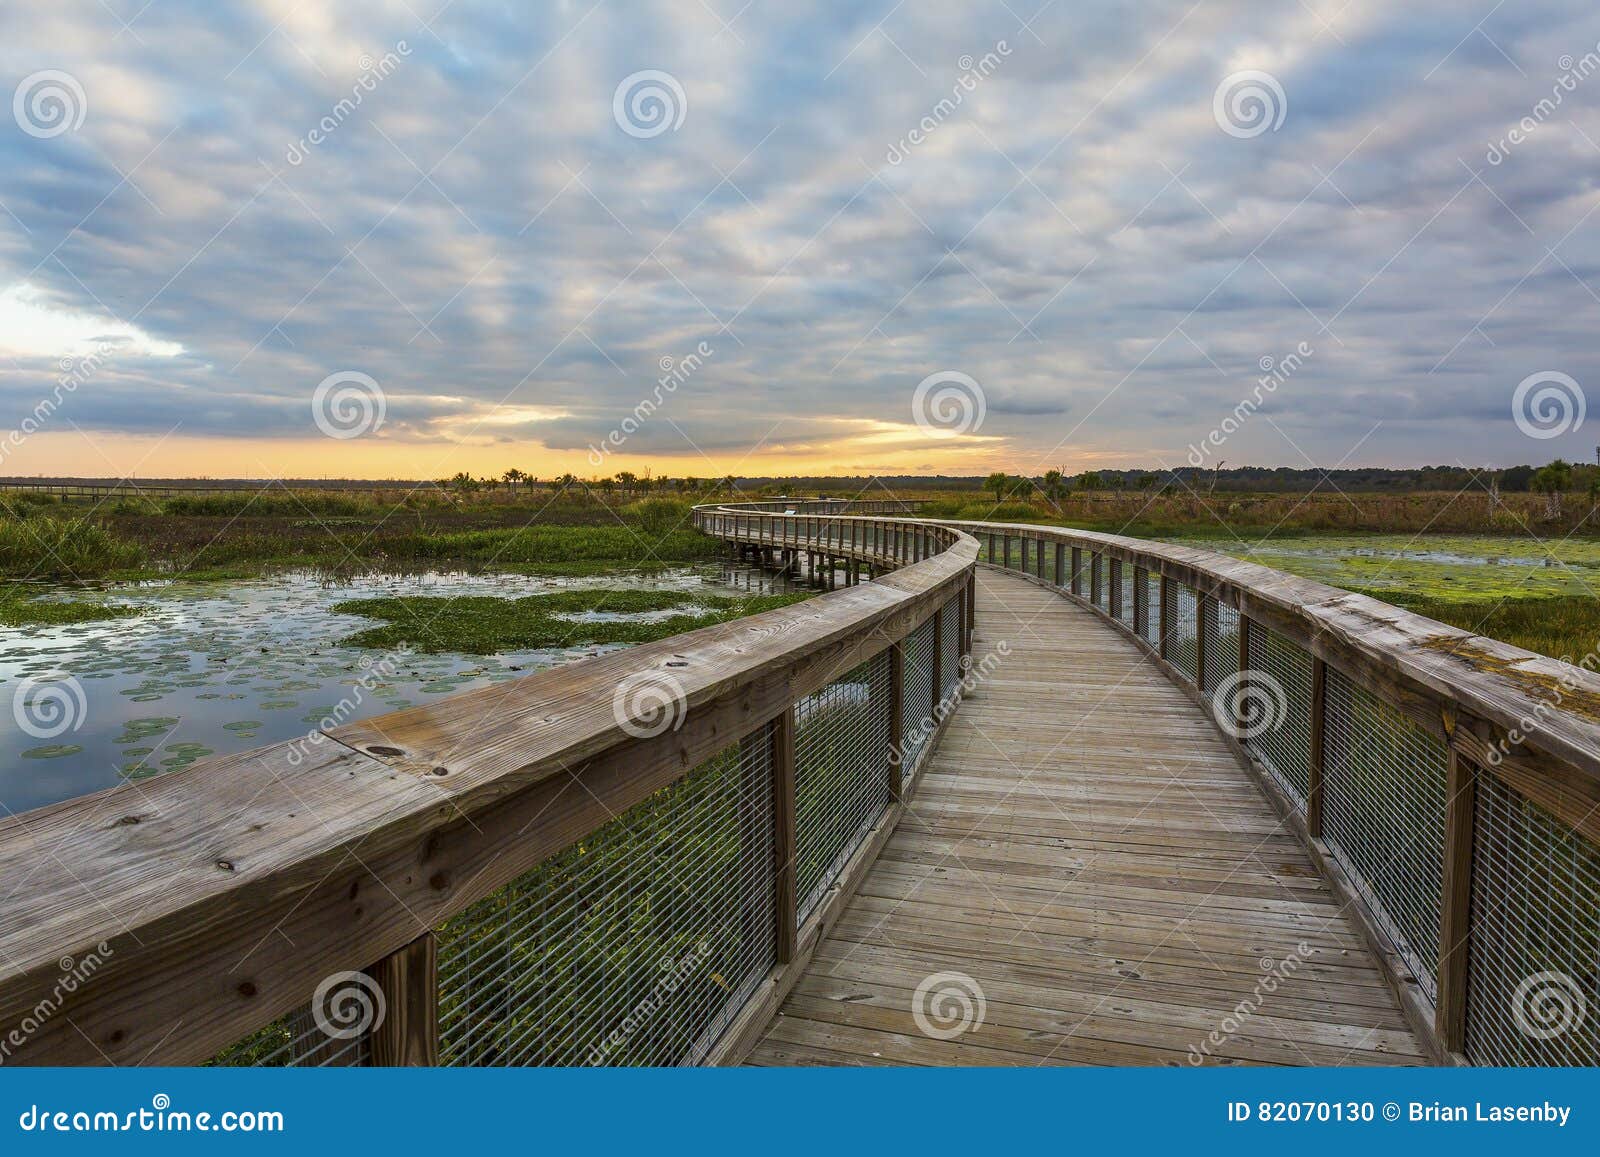 boardwalk through a wetland - gainesville, florida